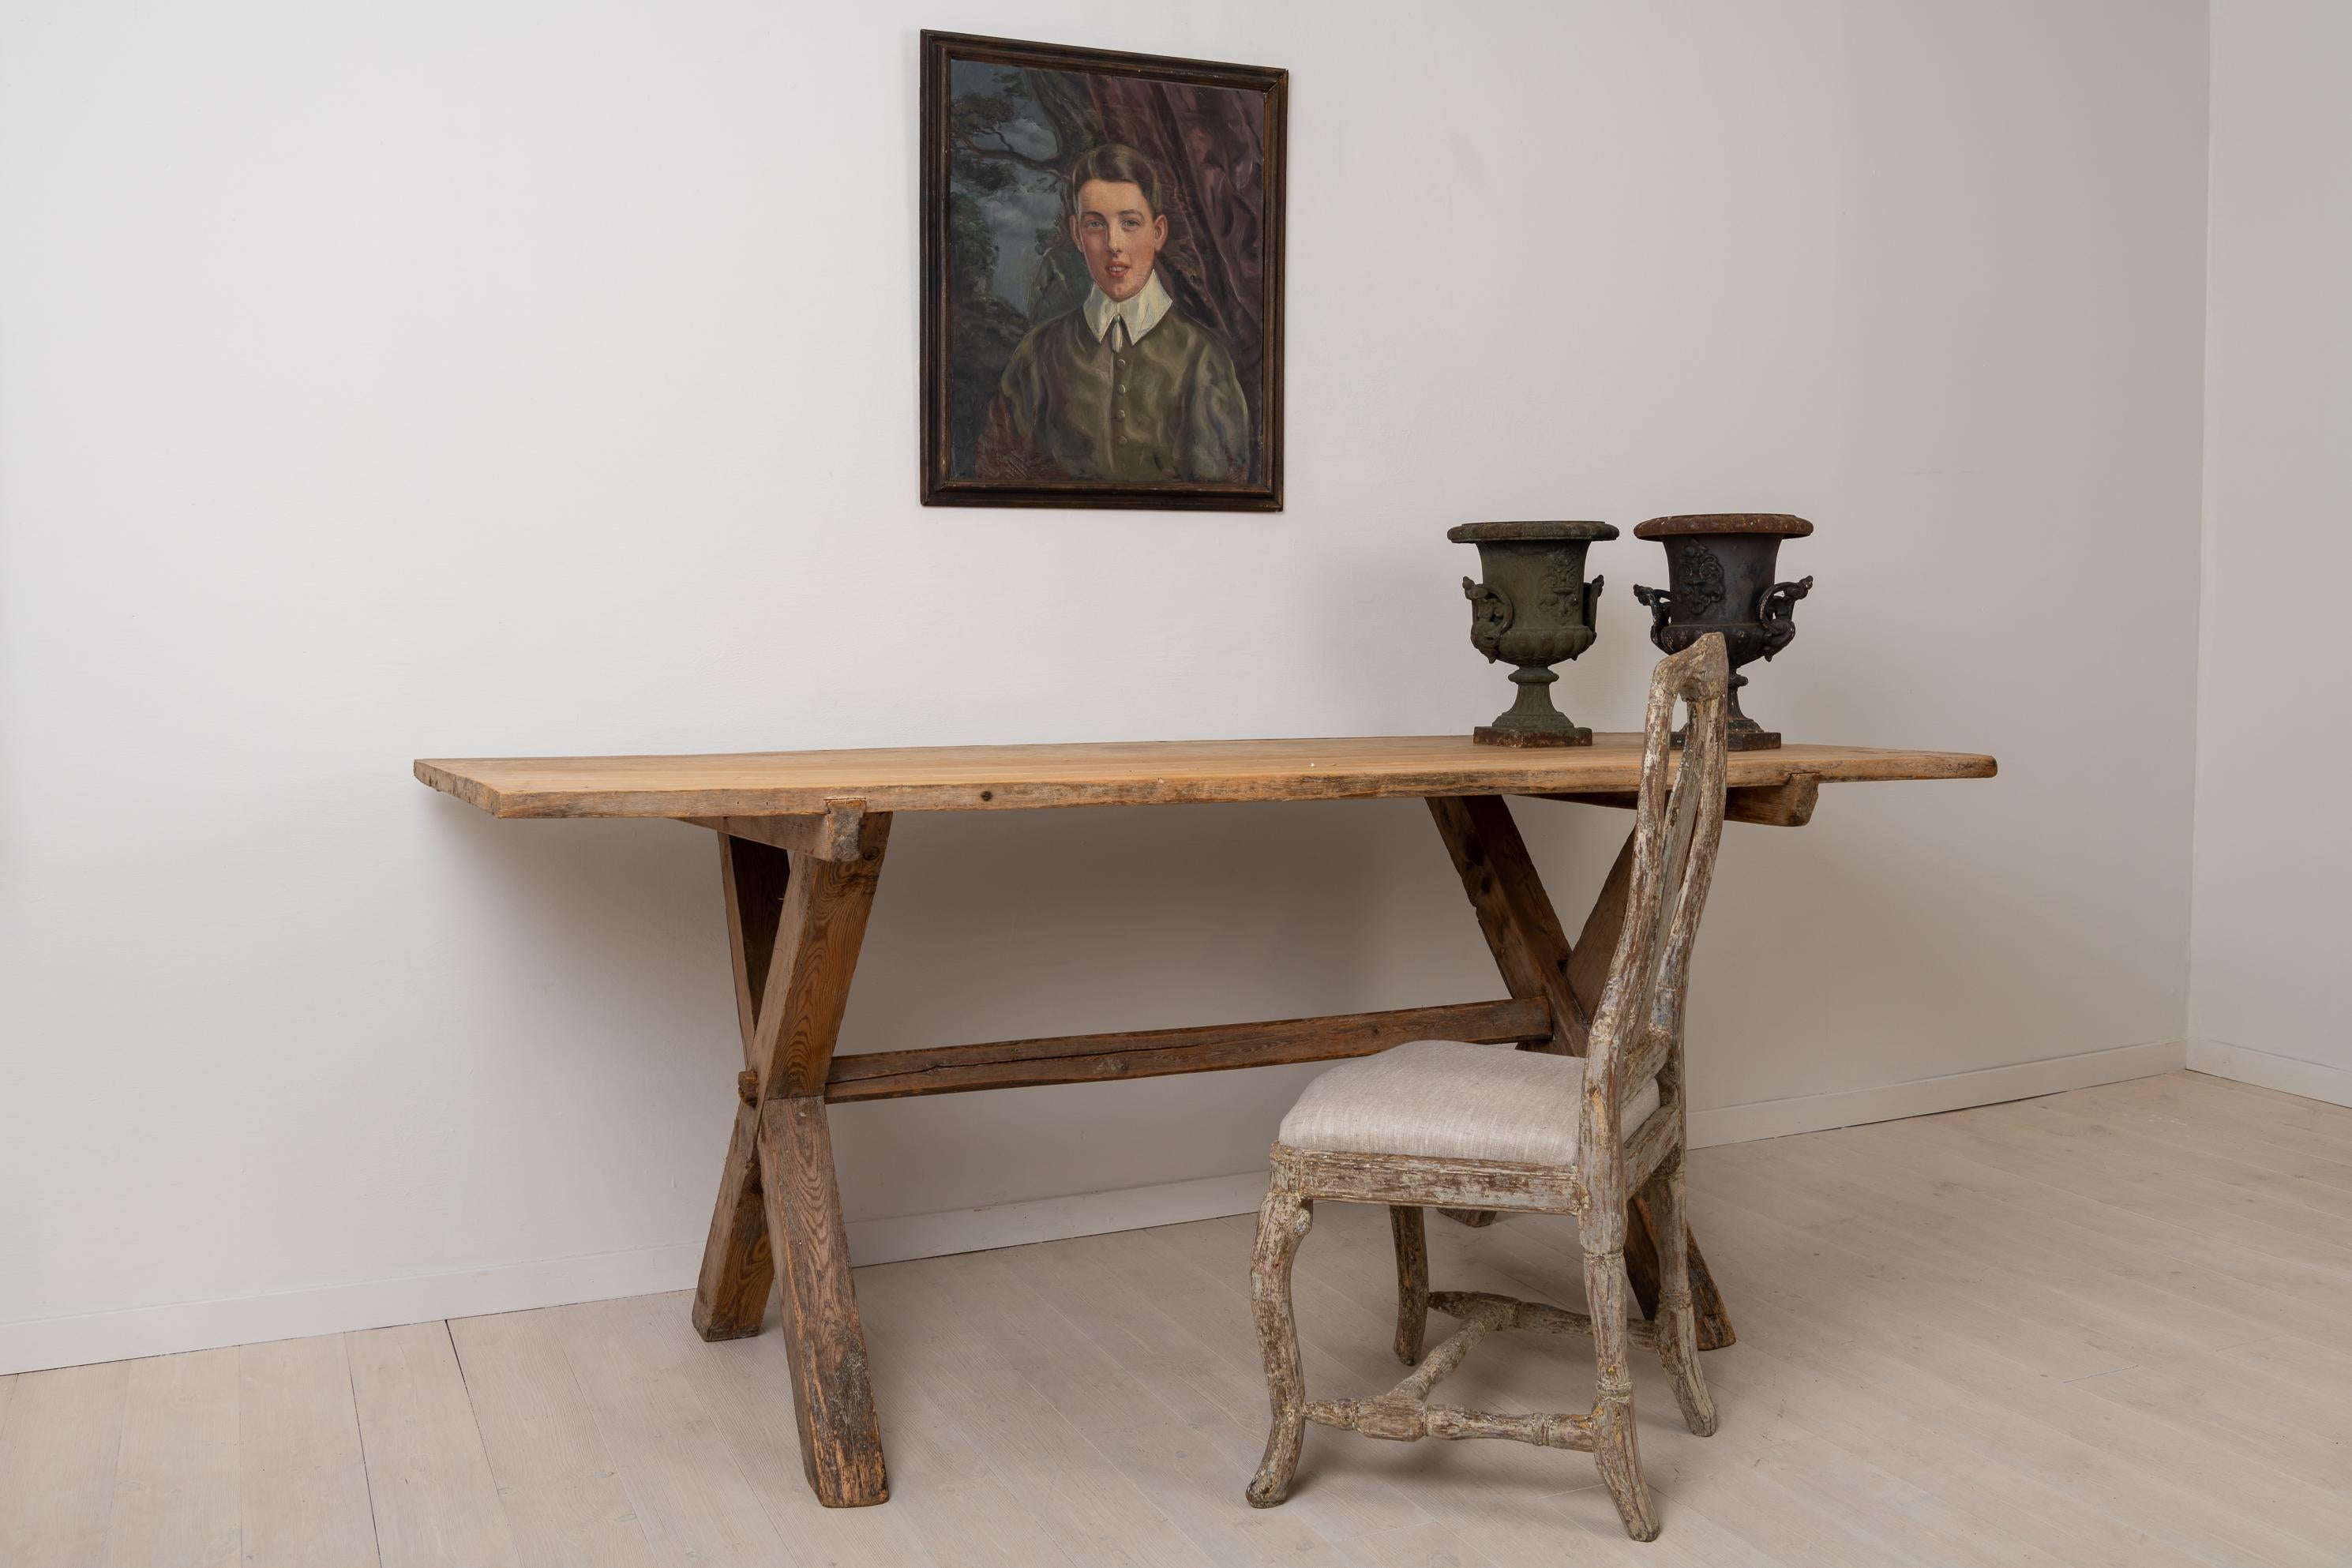 Großer Tisch aus schwedischem Kiefernholz aus dem späten 1700er. Der Tisch ist rustikal und primitiv mit sauberen und leicht patinierten Oberflächen sowohl auf der Tischplatte als auch auf dem X-Fuß. Die Tischplatte besteht aus zwei großen Brettern